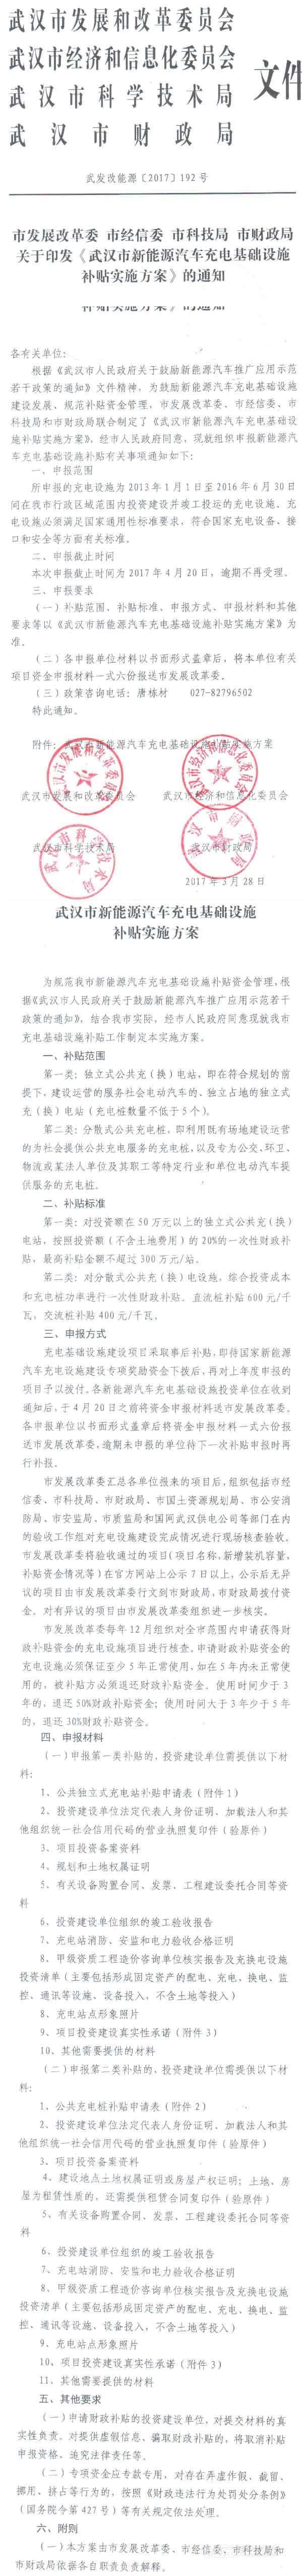 武汉充电设施补贴方案发布